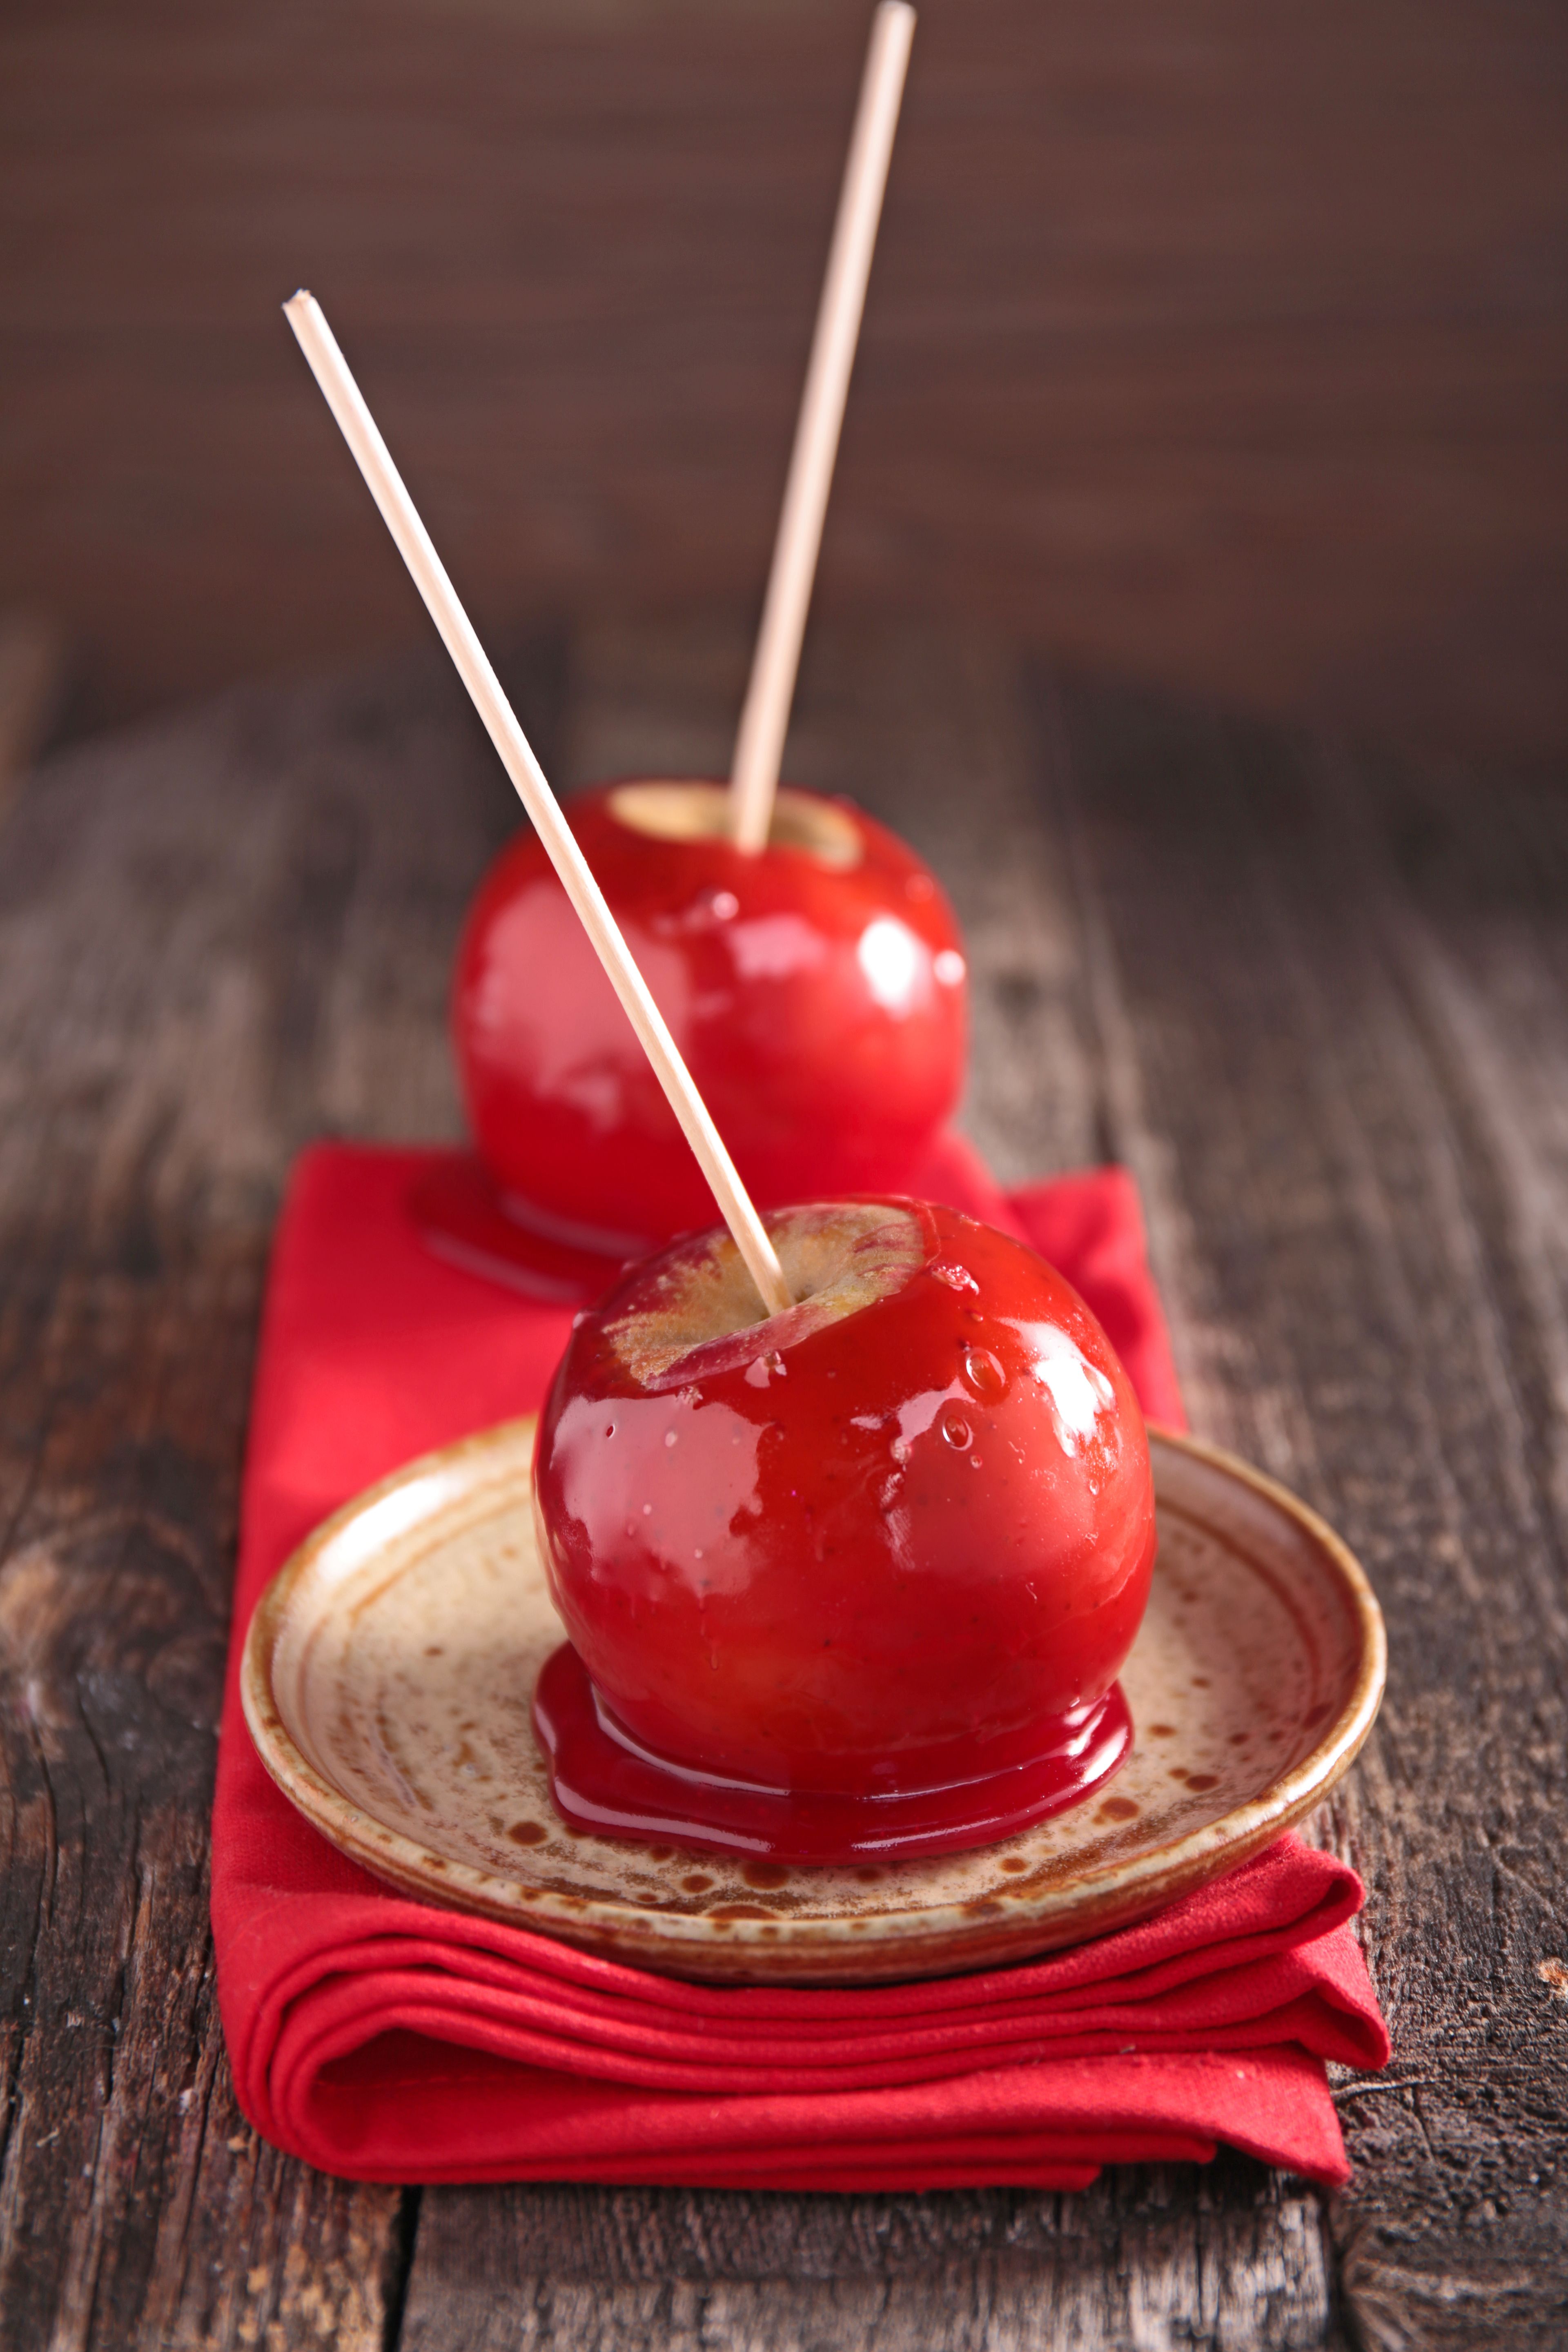 Recette Mini-pommes d'amour au caramel (facile, rapide)